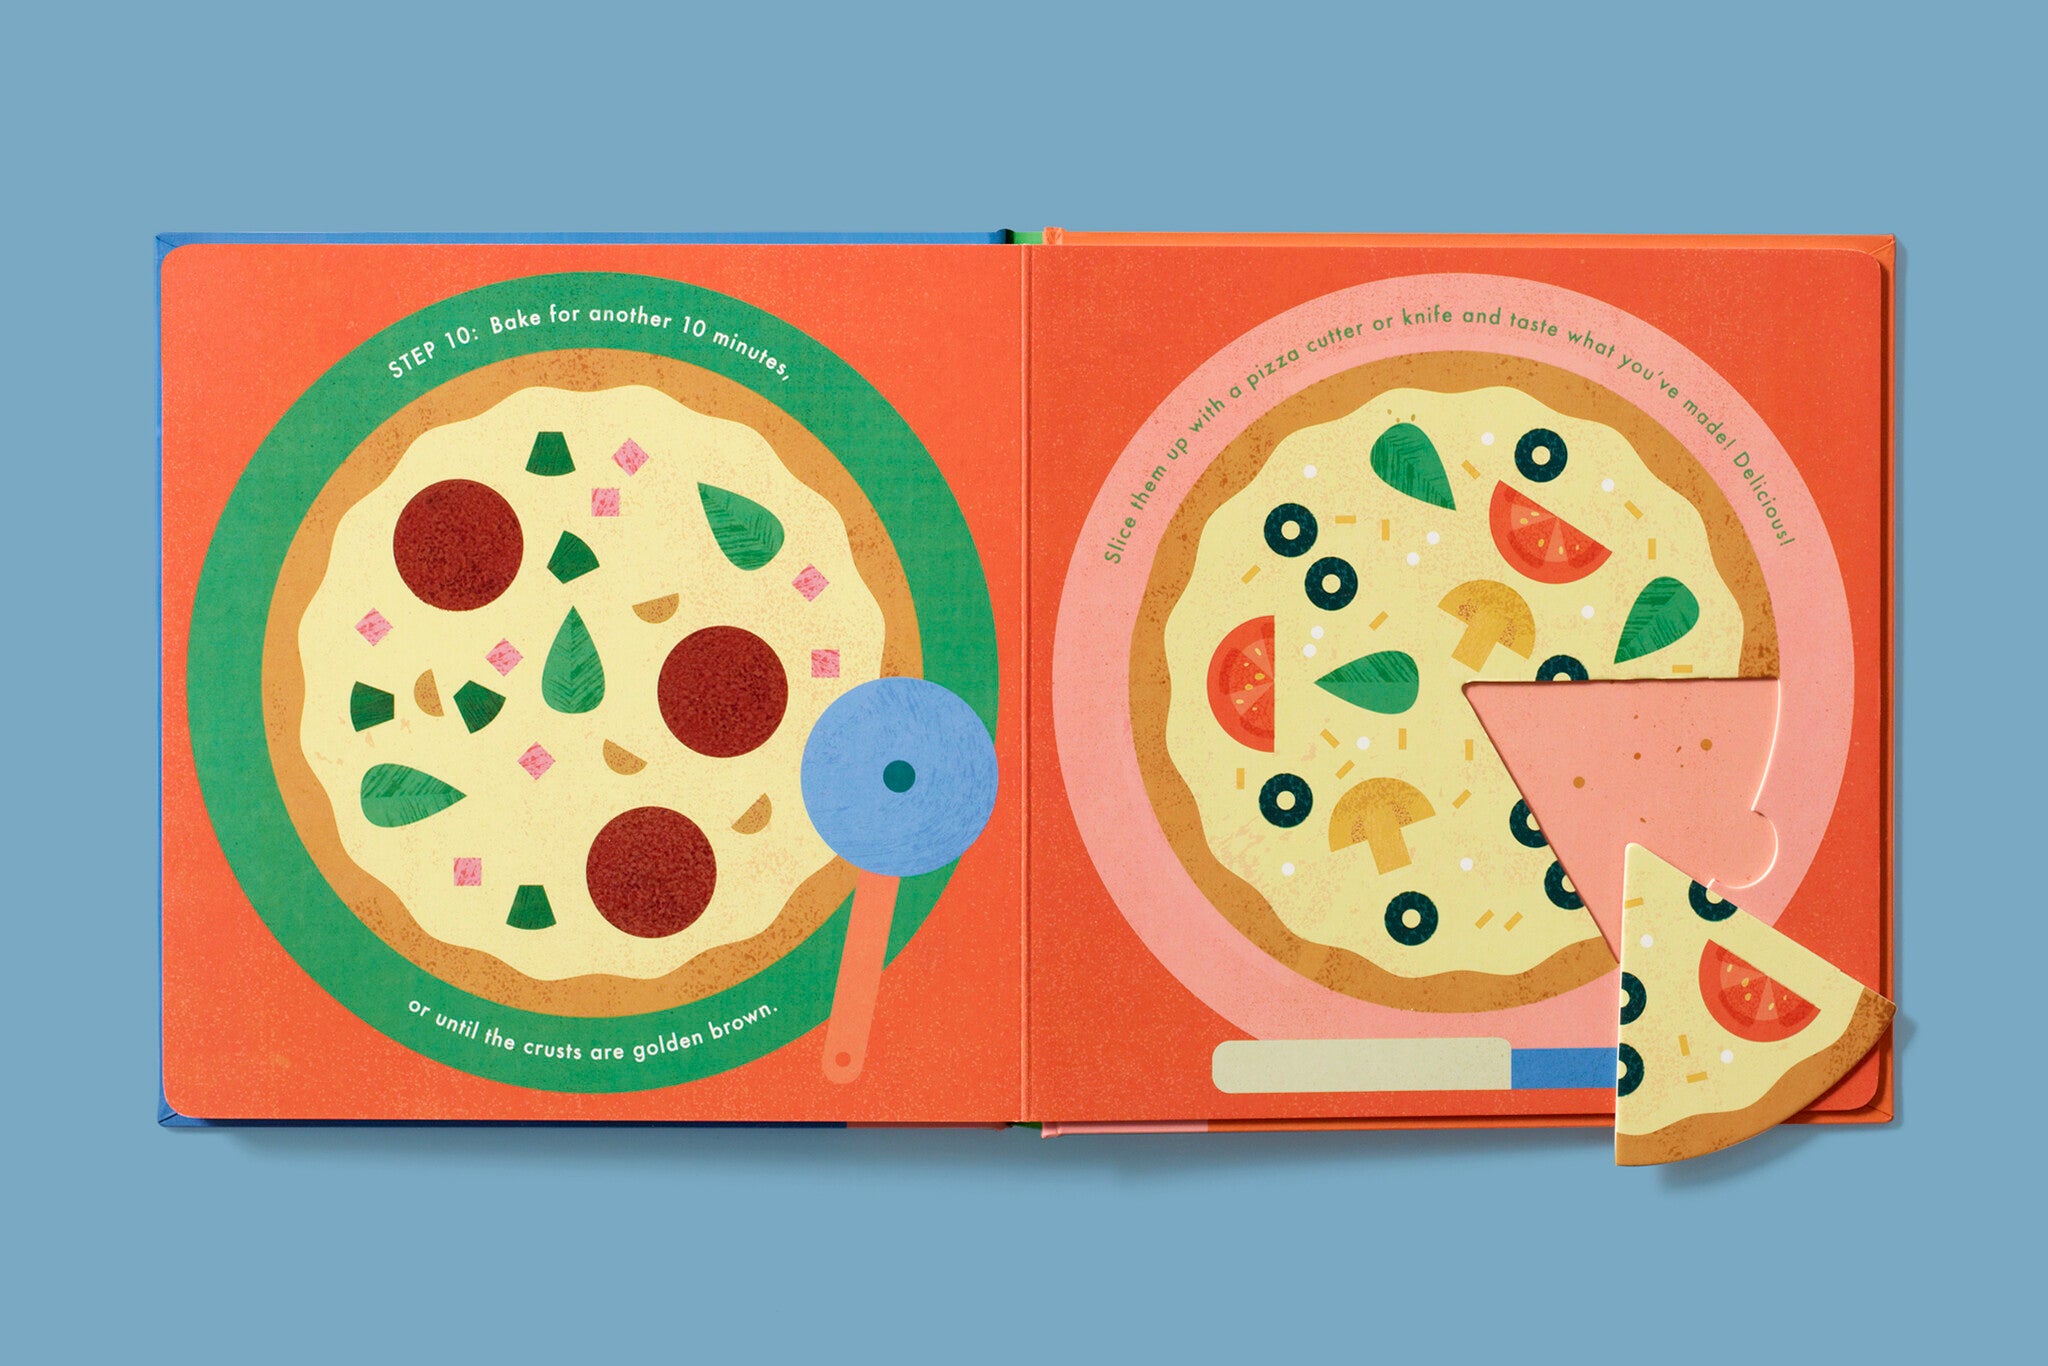 Cook in a Book, An Interactive Recipe Book